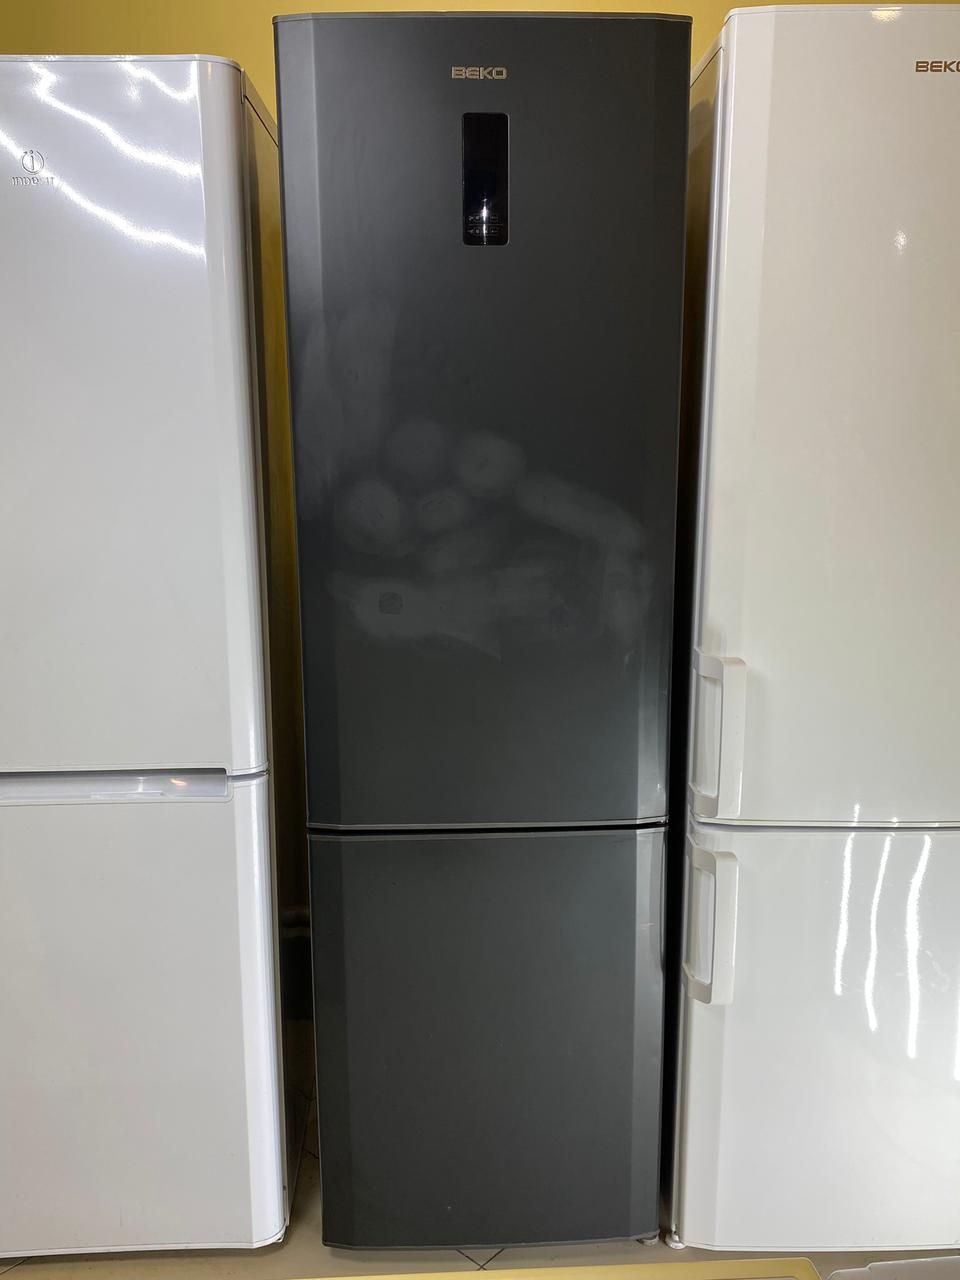 Холодильники в идеальном состоянии Гарантия Рассрочка Доставка